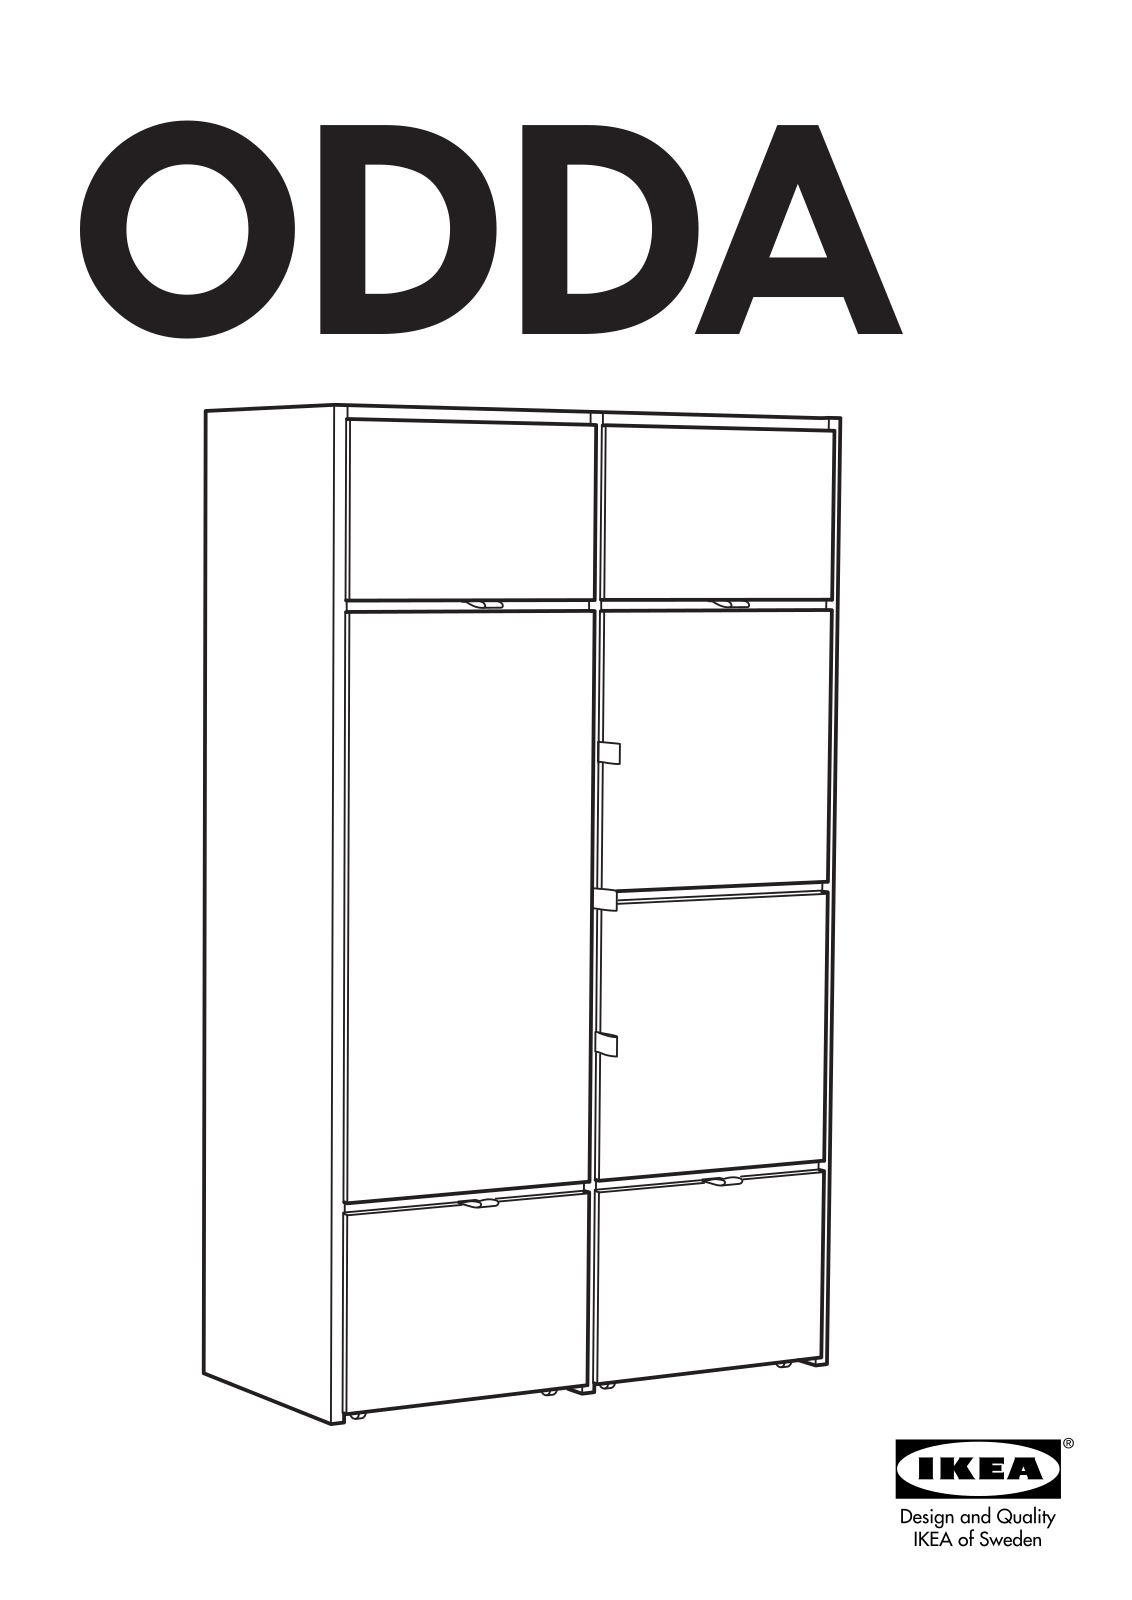 IKEA ODDA WARDROBE Assembly Instruction